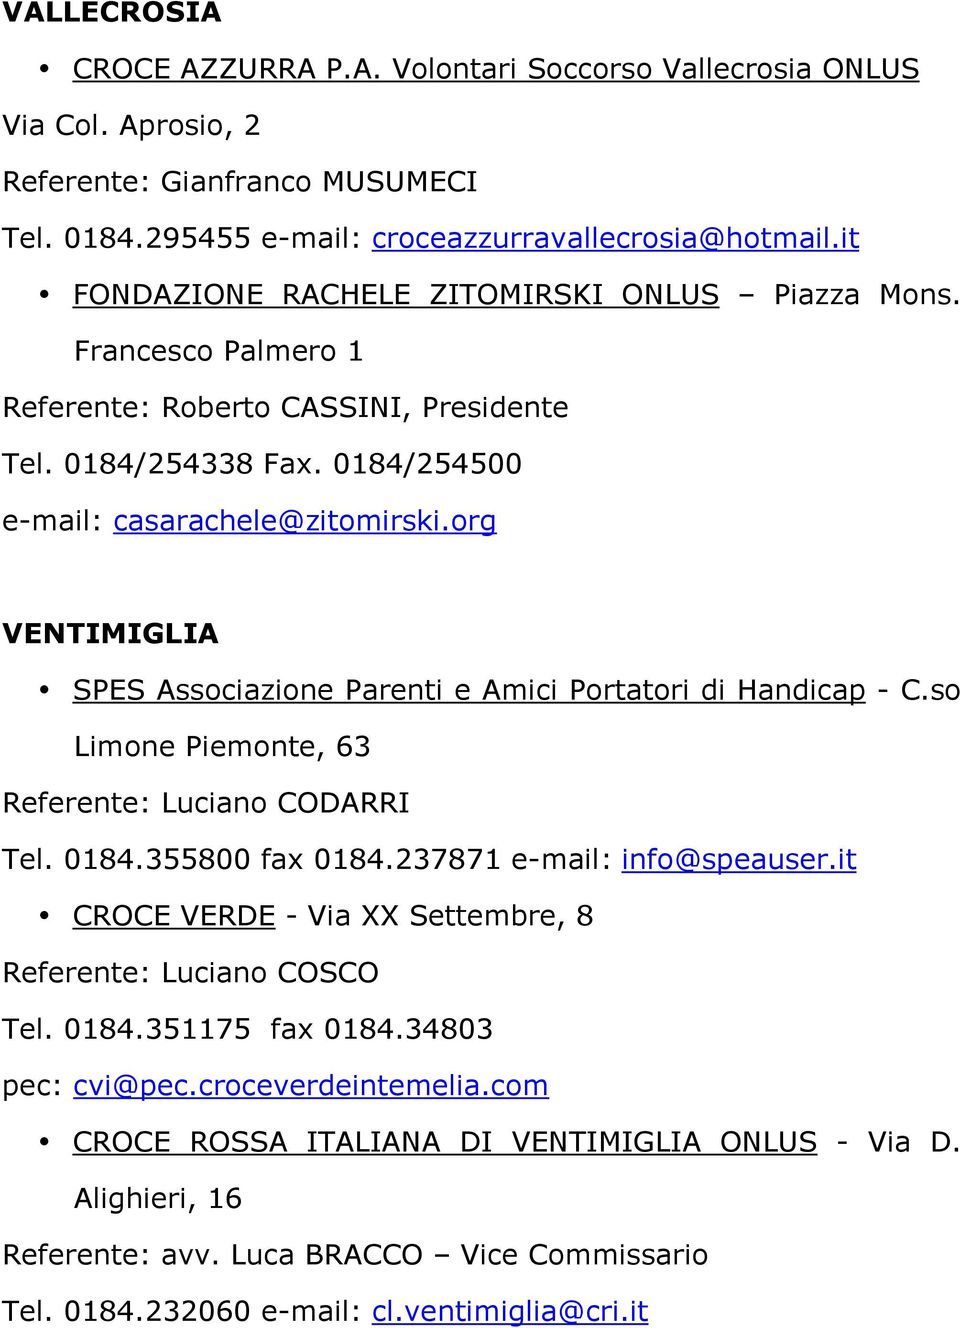 org VENTIMIGLIA SPES Associazione Parenti e Amici Portatori di Handicap - C.so Limone Piemonte, 63 Referente: Luciano CODARRI Tel. 0184.355800 fax 0184.237871 e-mail: info@speauser.